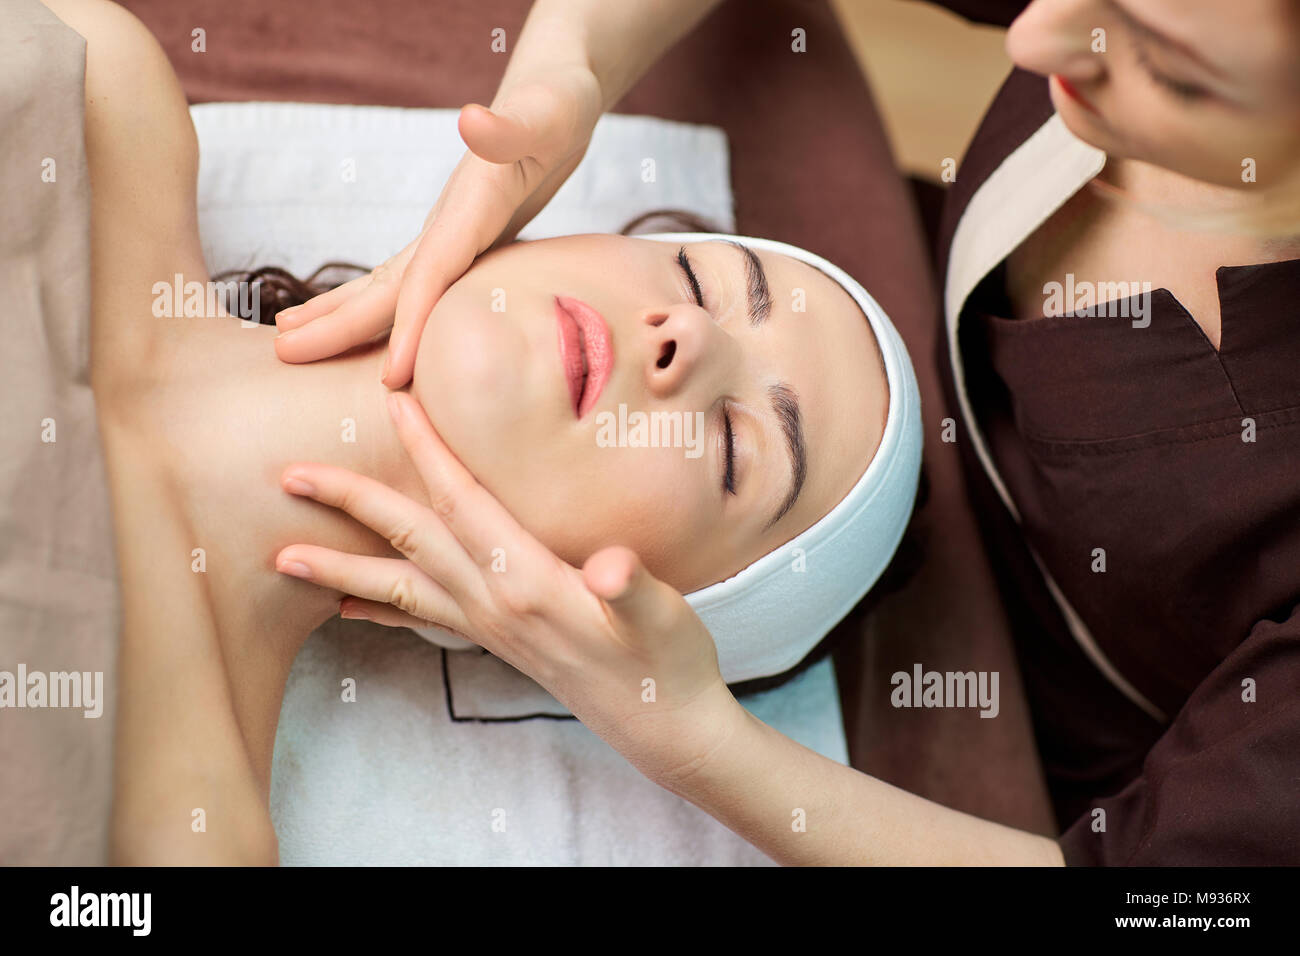 Beautiful woman at a facial massage at a spa salon Stock Photo